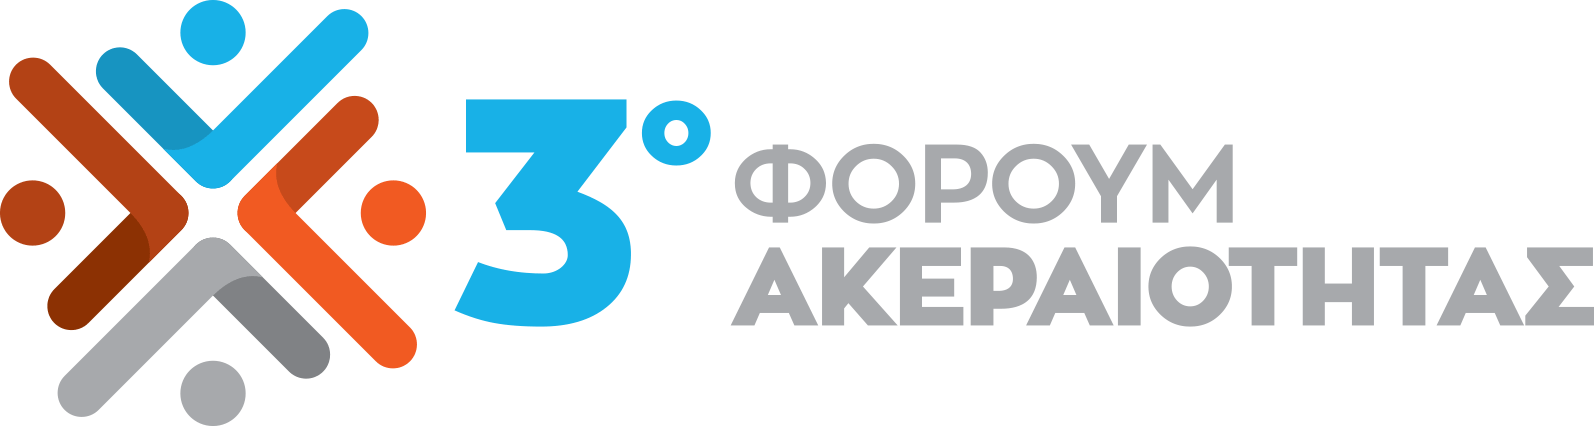 logo image